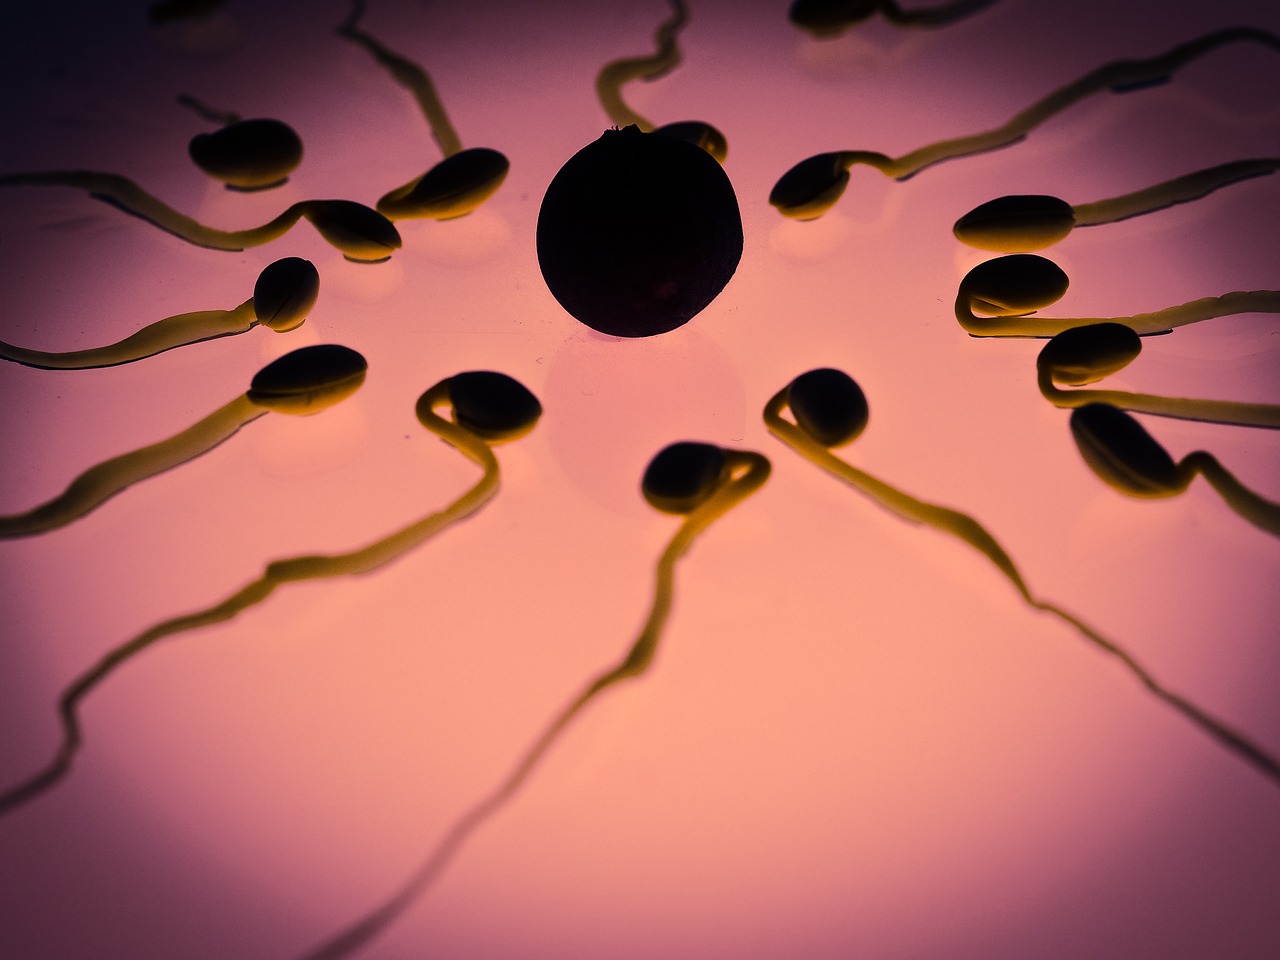 Comment utiliser le test d'ovulation Clearblue pour calculer sa période d'ovulation ?